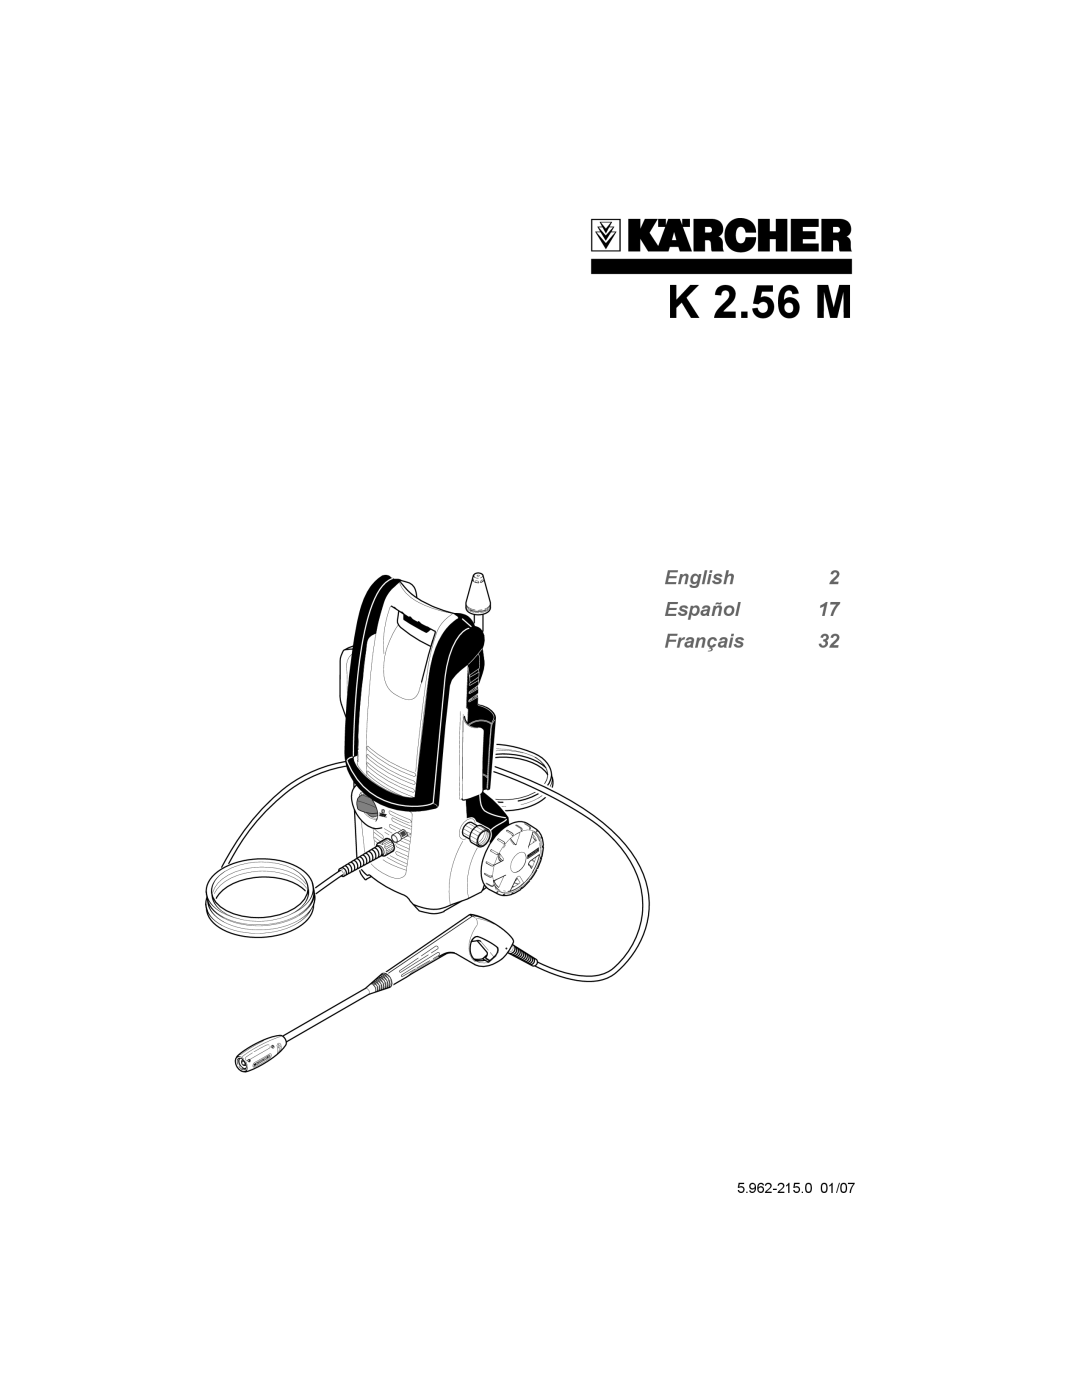 Karcher K 2.56 M manual English Español Français, 5.962-215.001/07 